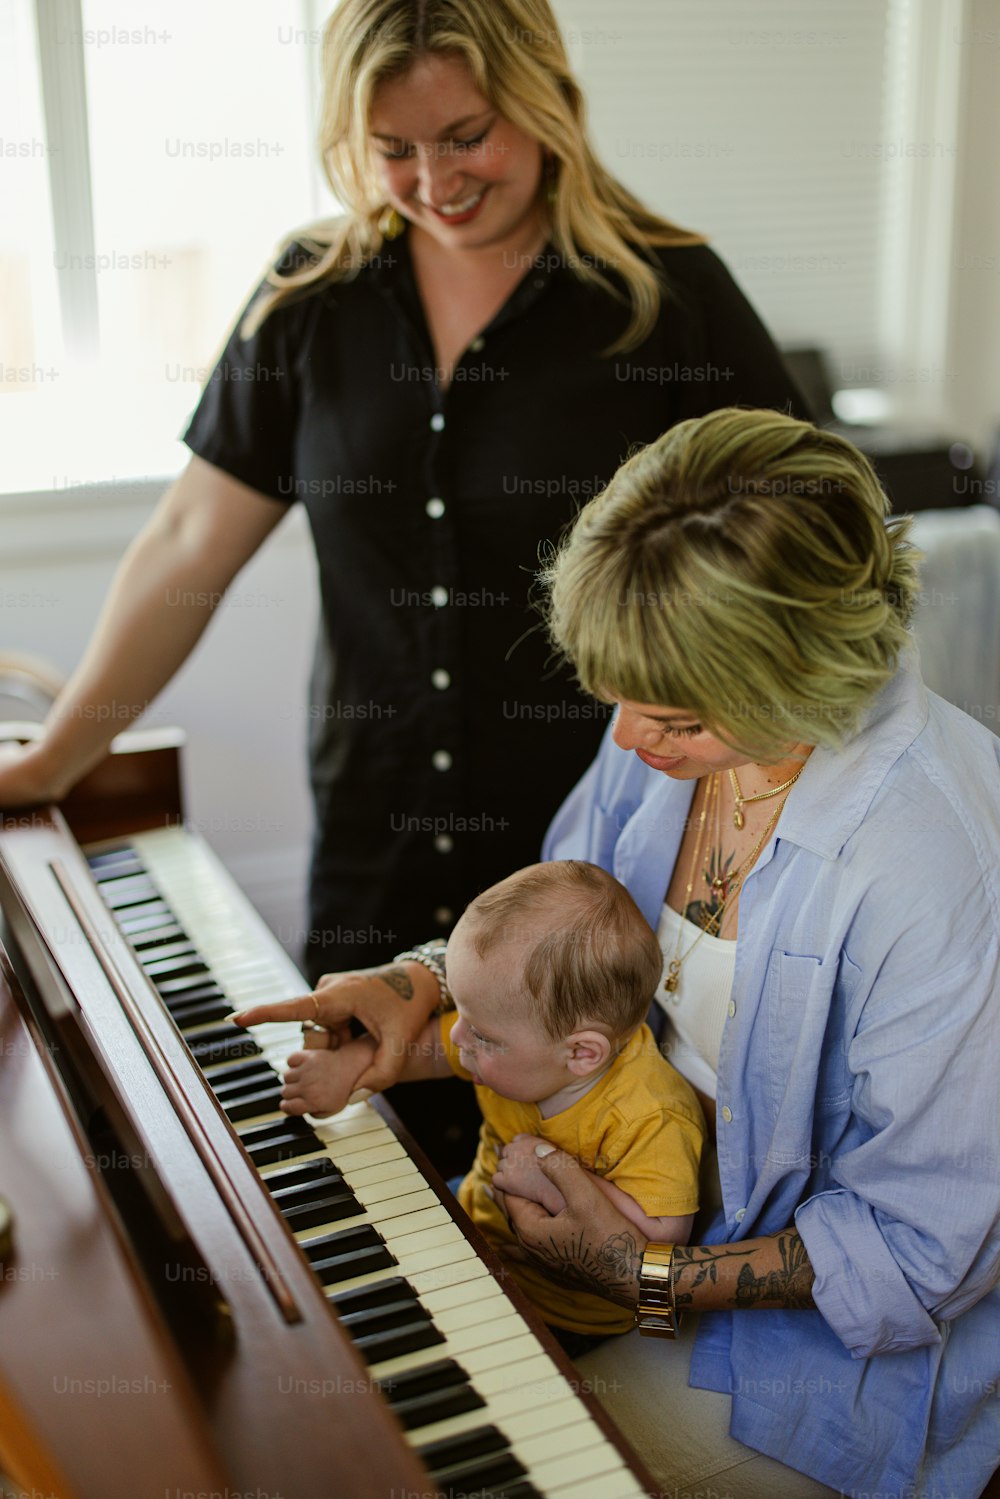 Una donna sta suonando un pianoforte con un bambino